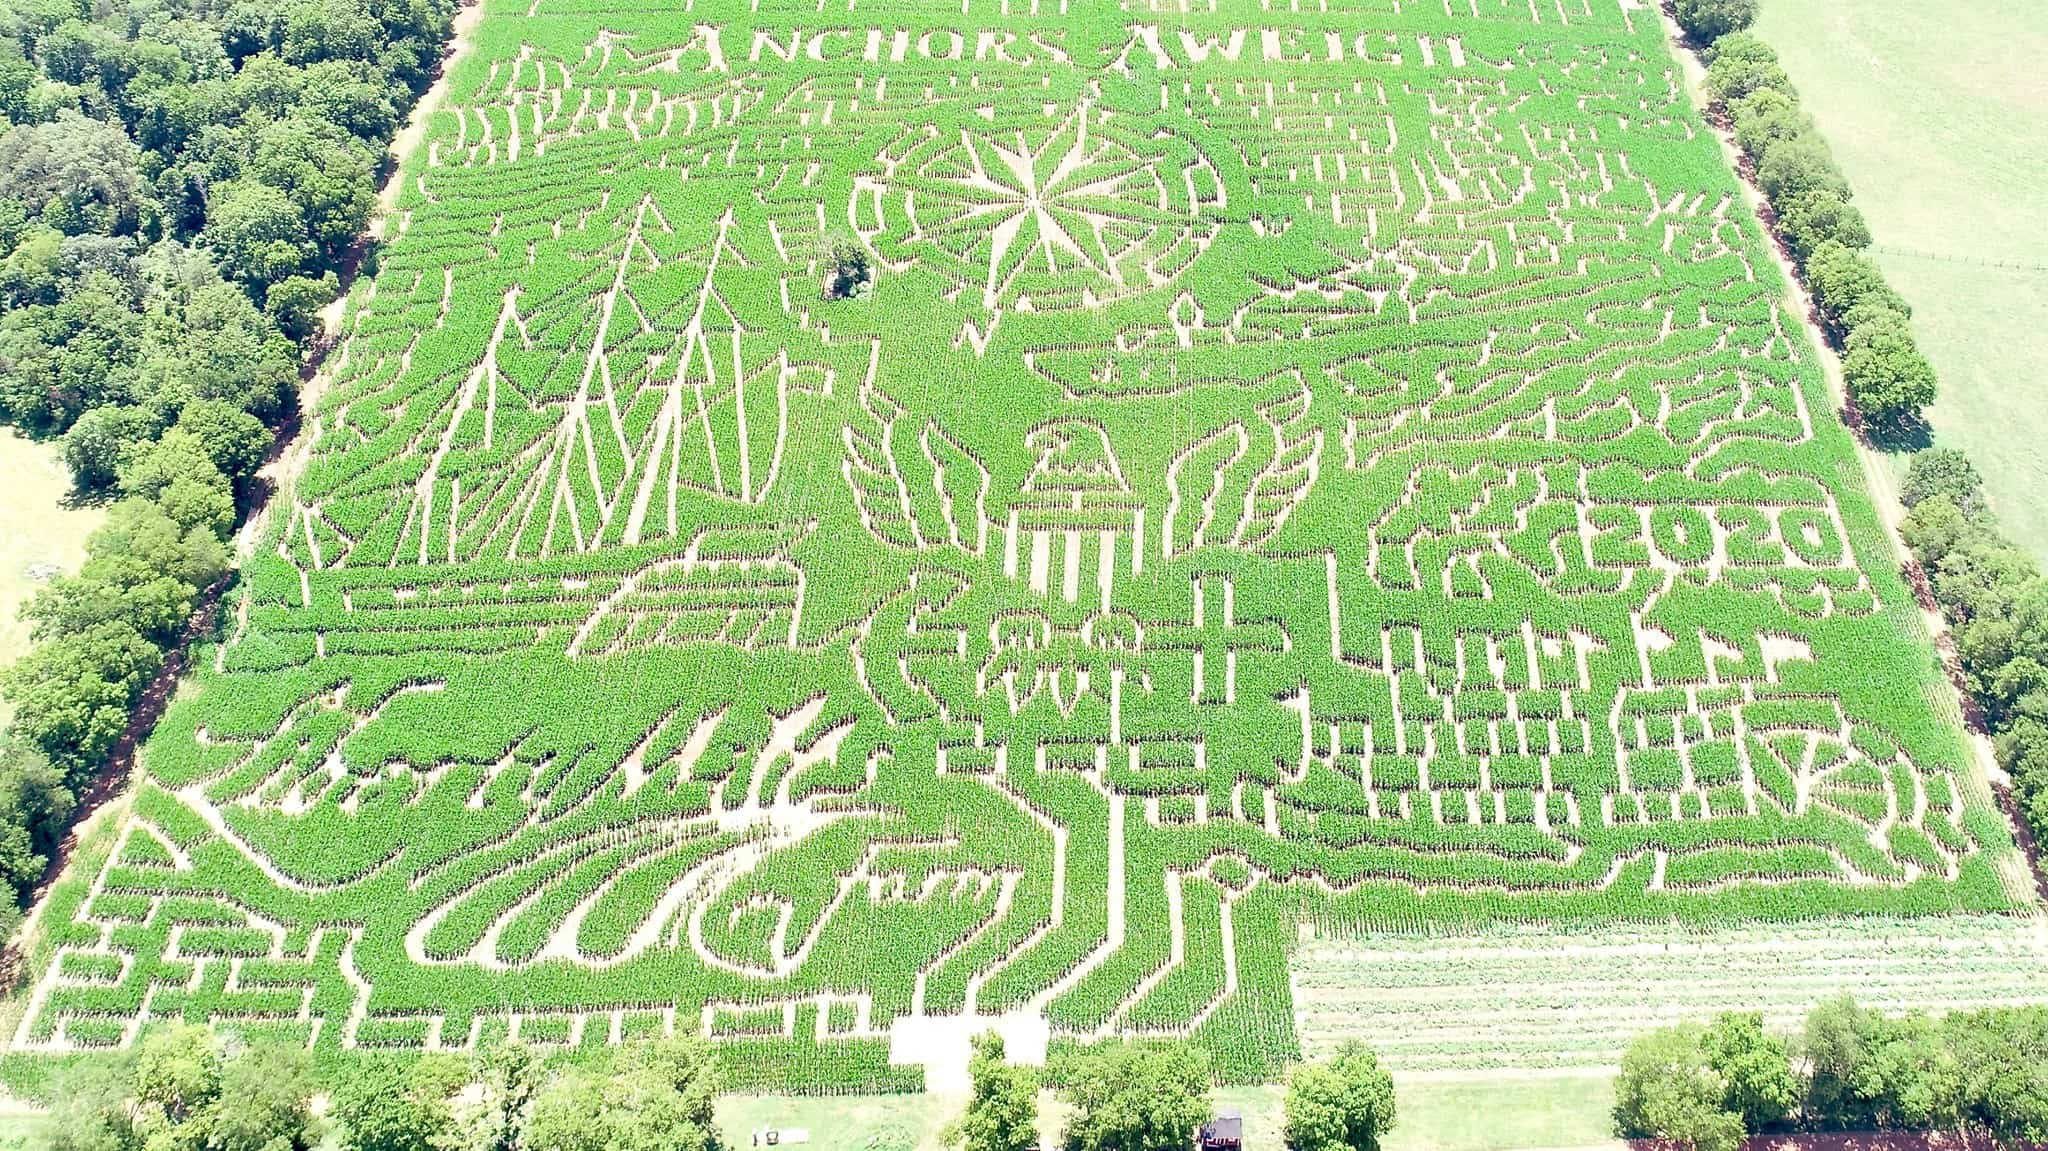 Corn maze 